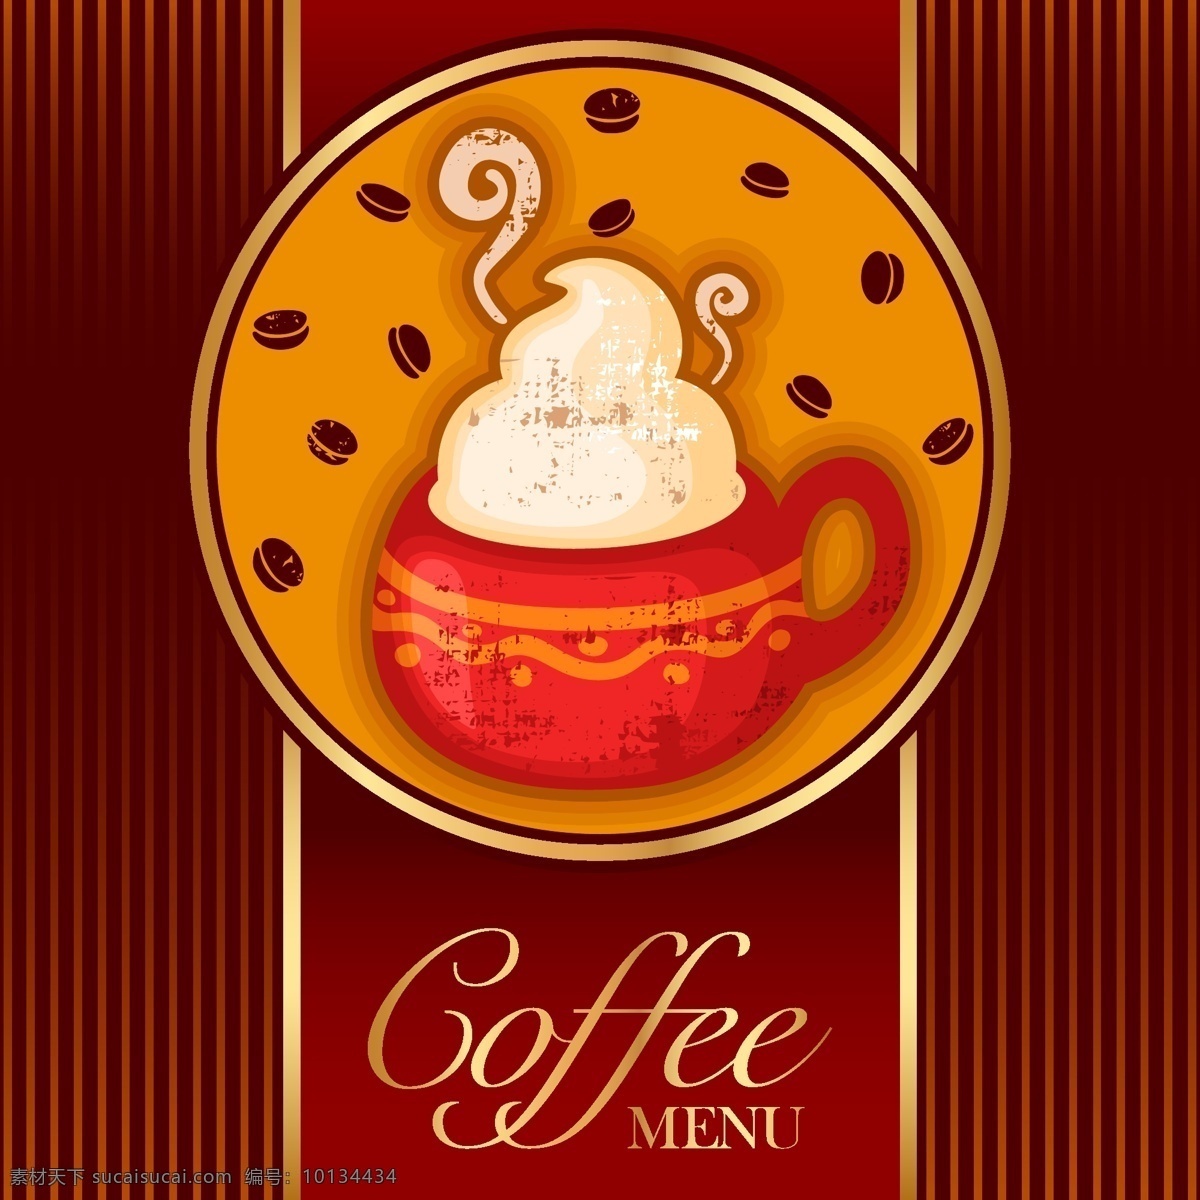 咖啡 卡通 宣传 图 模板下载 咖啡店 宣传图 可爱 食物 美味 标志图标 矢量素材 红色